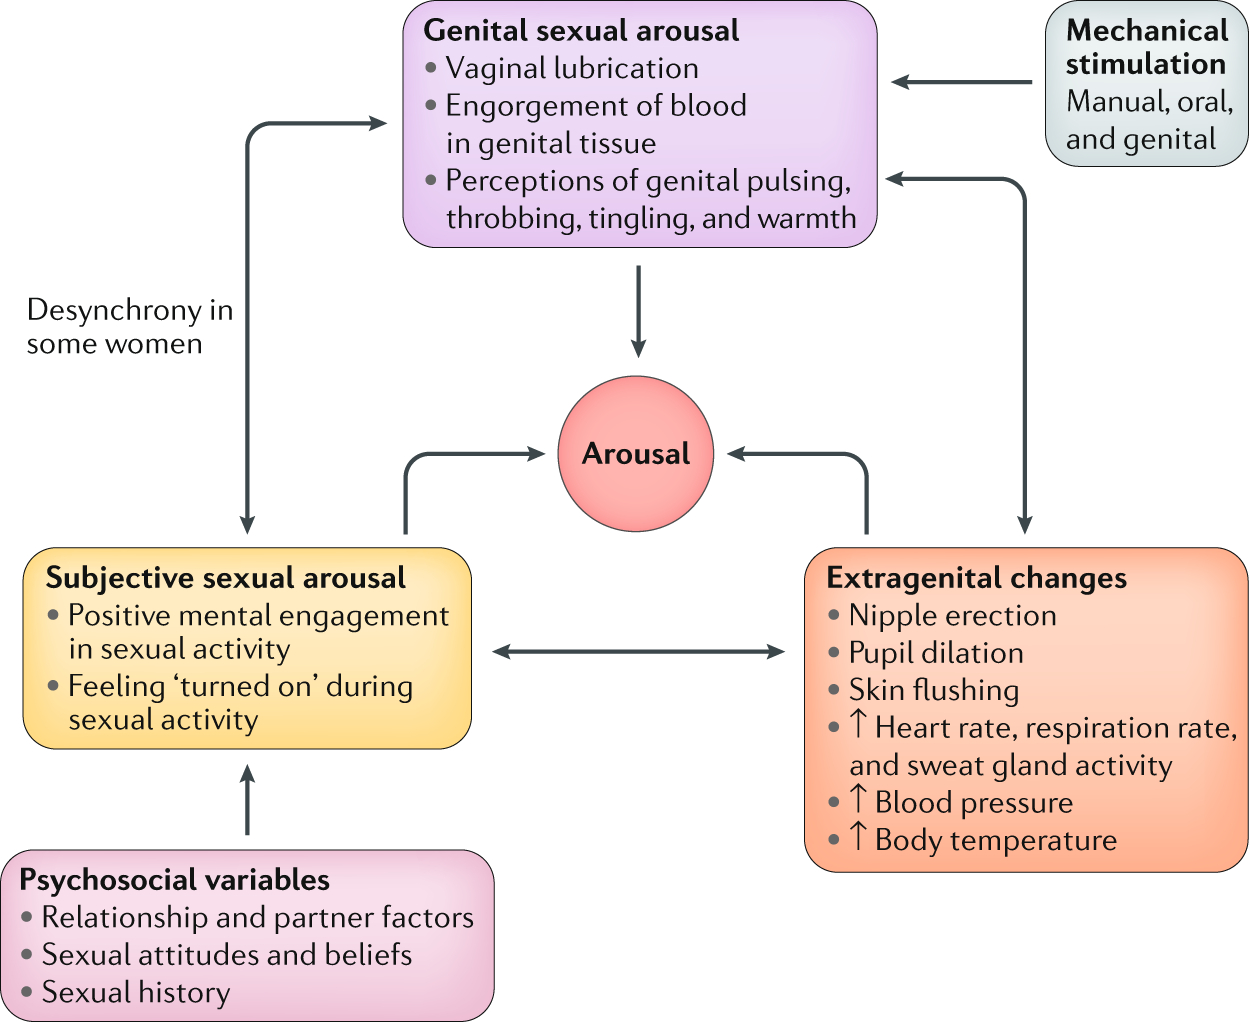 Women's Genitalia Diagram Understanding Sexual Arousal And Subjectivegenital Arousal